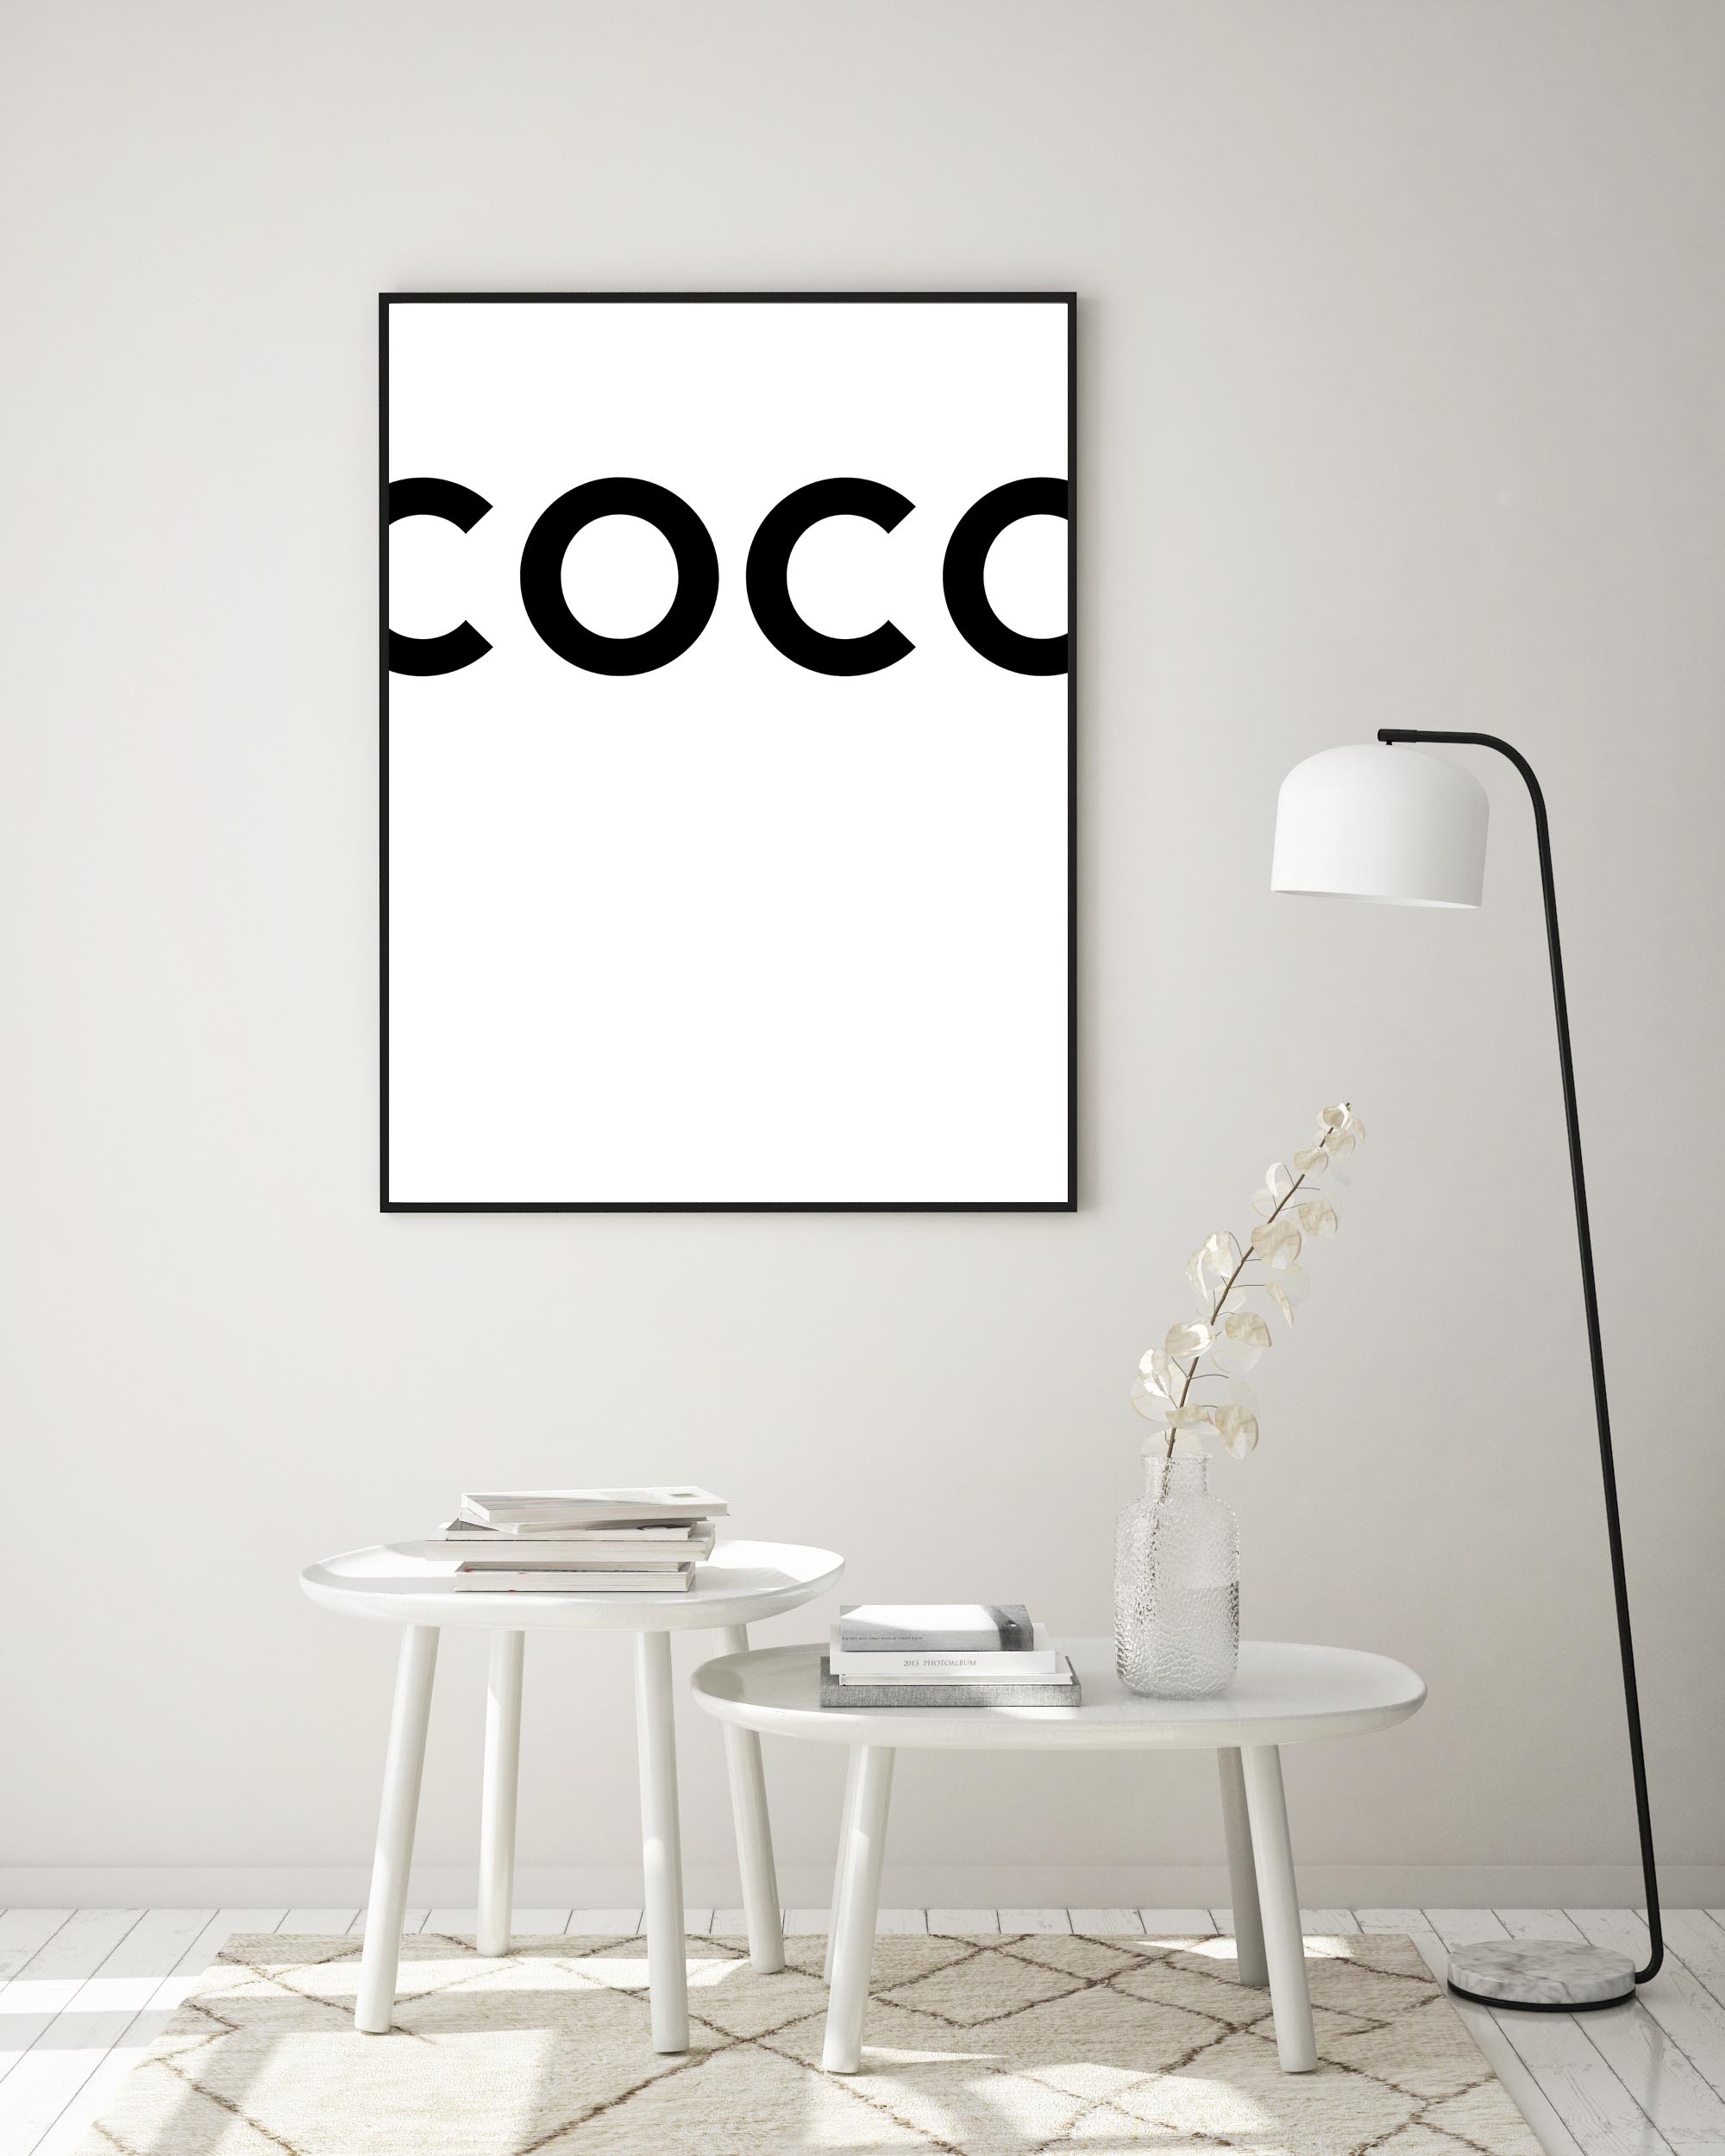 COCO affisch